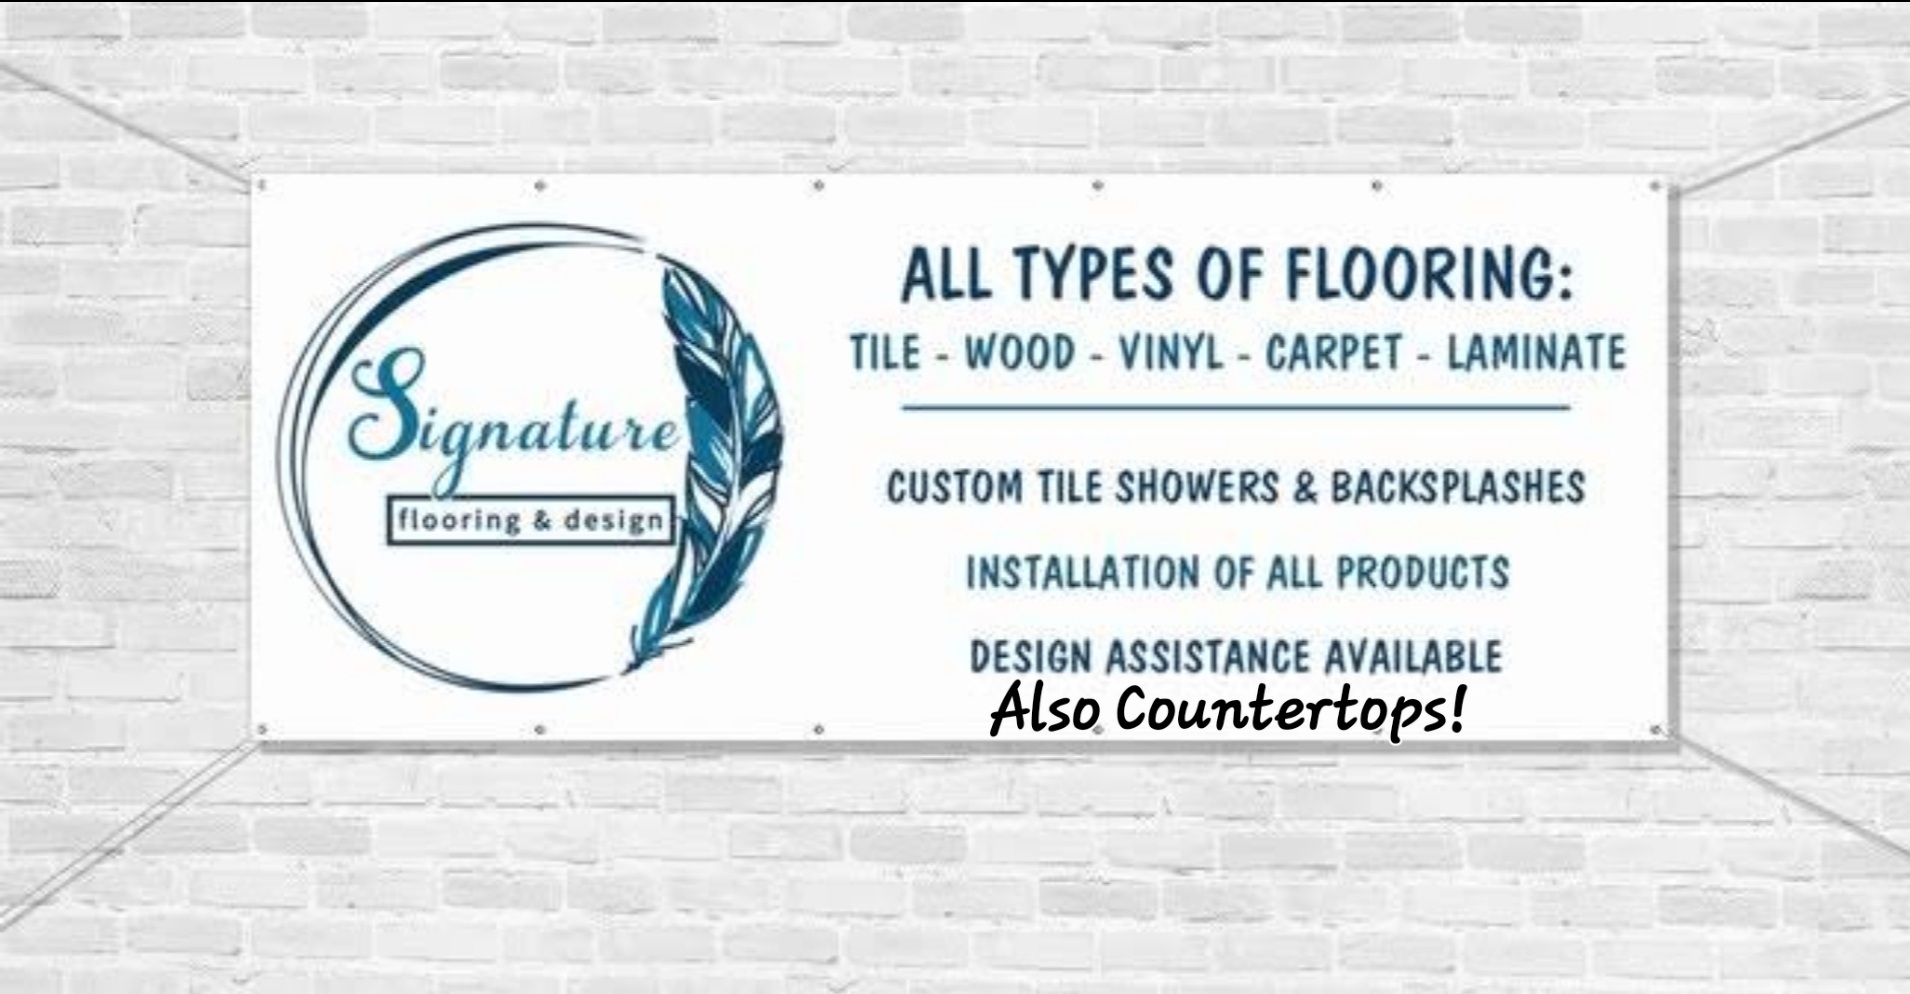 Signature Flooring & Design, LLC